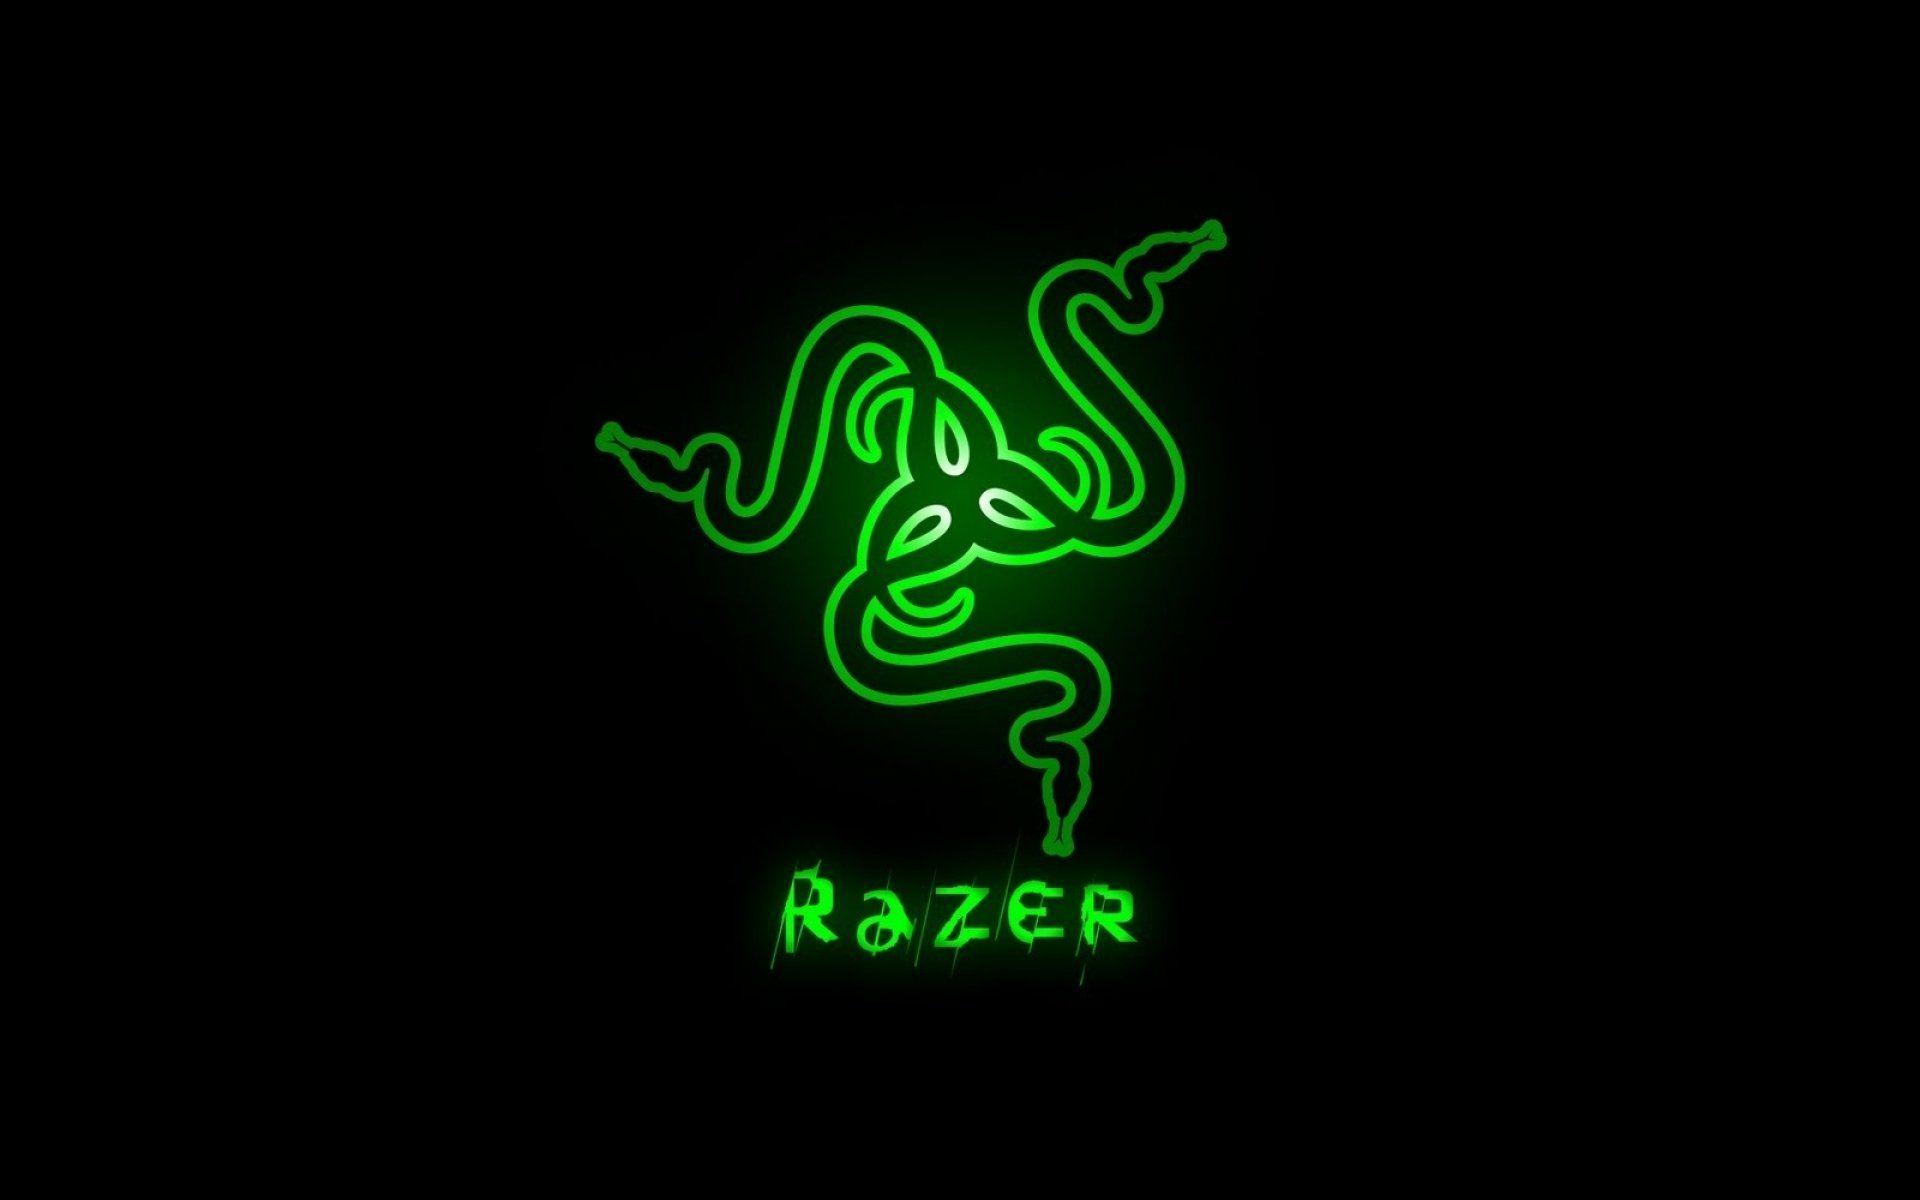 Razer Gaming Wallpapers - Los mejores fondos de Razer Gaming gratis